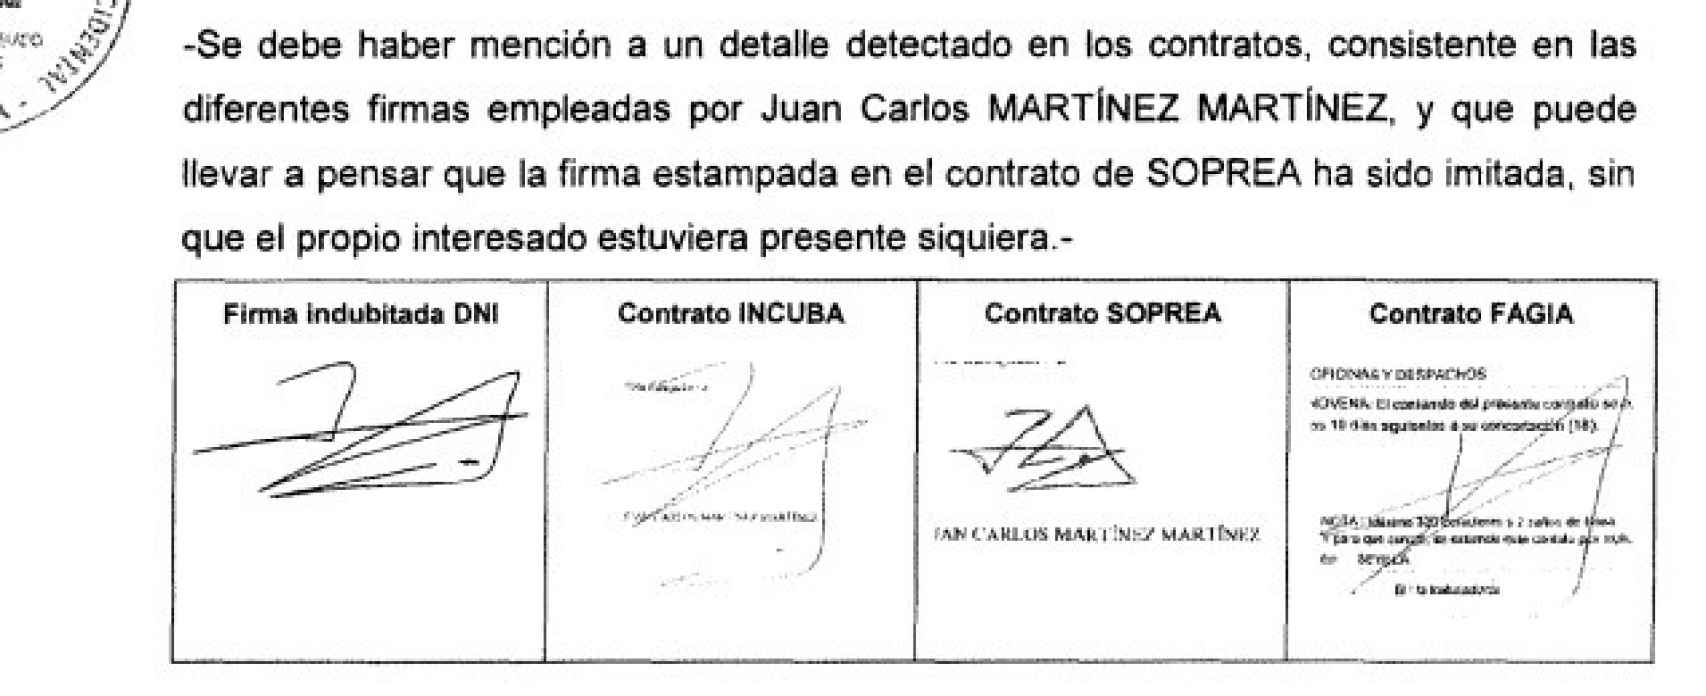 La UDEF cree que uno de los contratos de Juan Carlos Martínez fue falsificado porque su forma parece imitada.